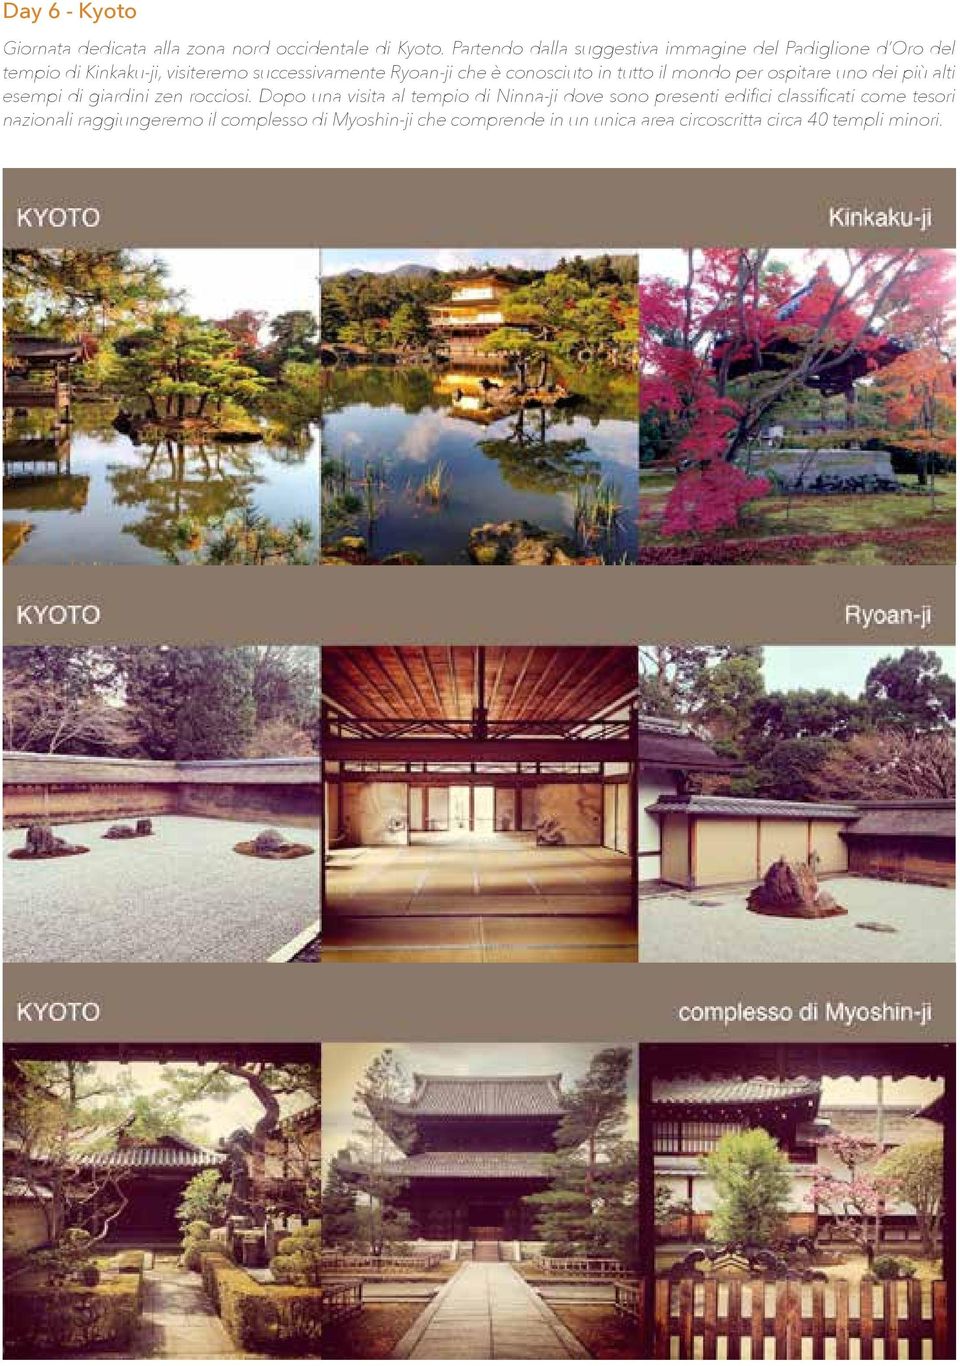 conosciuto in tutto il mondo per ospitare uno dei più alti esempi di giardini zen rocciosi.